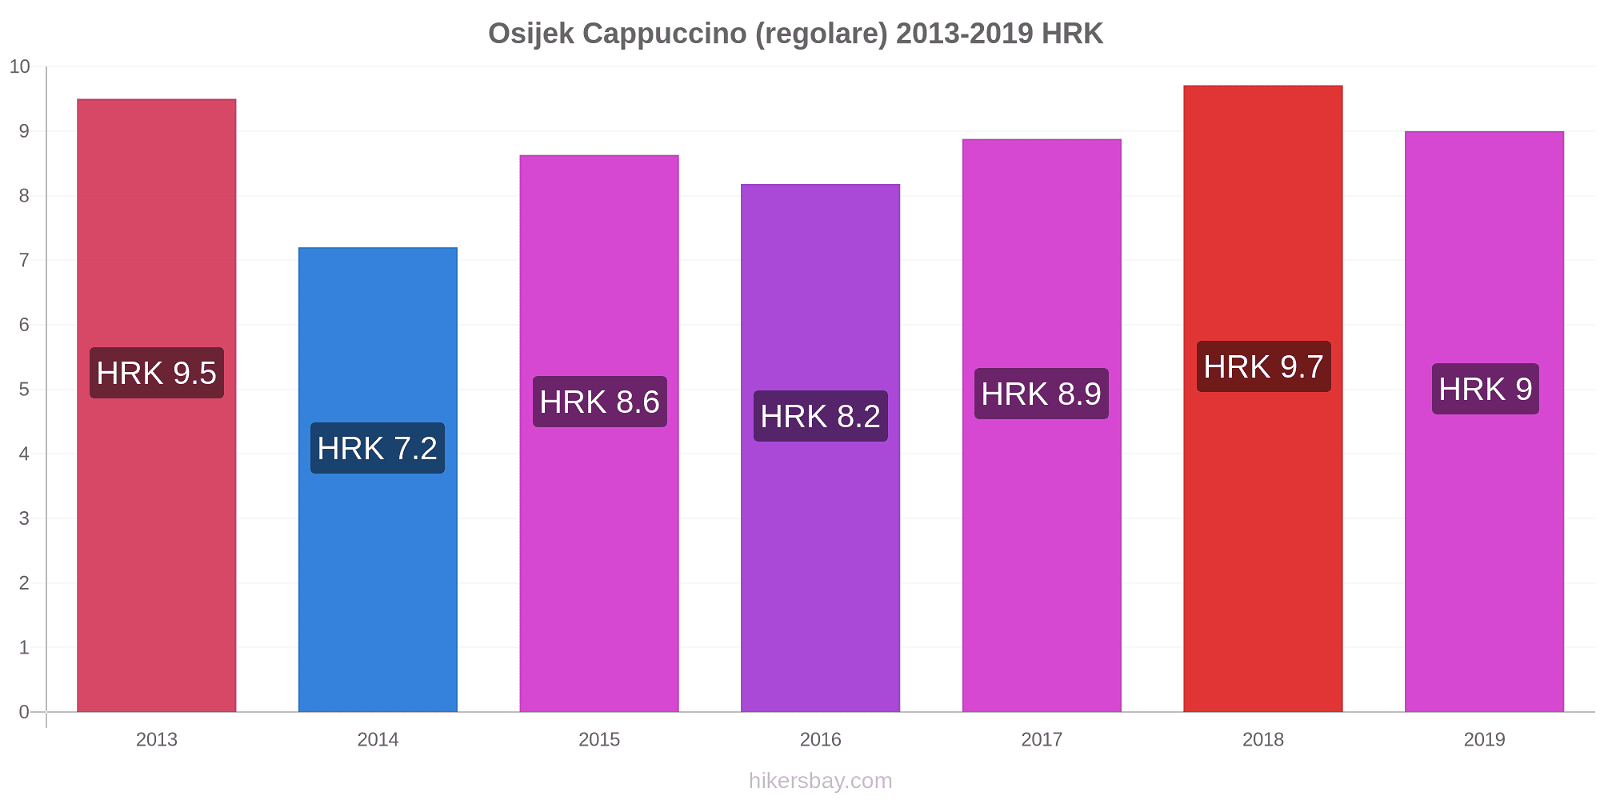 Osijek variazioni di prezzo Cappuccino (normale) hikersbay.com